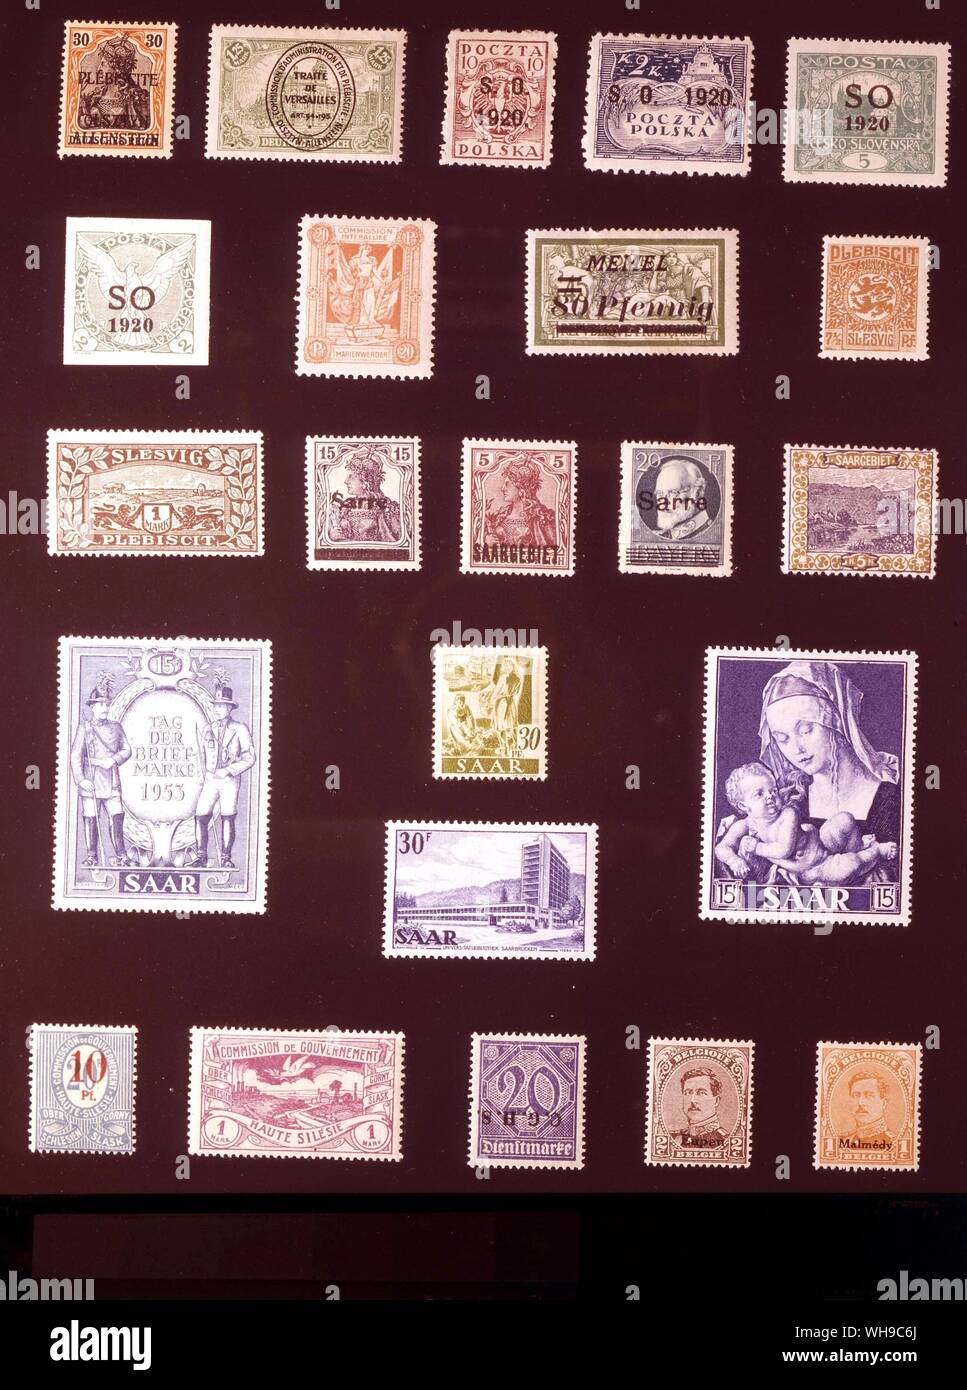 EUROPE - GERMAN PLEBISCITE TERRITORIES: (left to right) 1. Allenstein (Olsztyn), 30 pfennigs, 1920, 2. Allenstein, 1.25 marks, 1920, 3. Eastern Silesia, 10 fenigi, 1920, 4. Eastern Silesia, 2 kronen, 1920, 5. Eastern Silesia, 5 haleru, 1920, 6. Eastern Silesia, 2 haleru, 1920, 7. Marienwerder, 20 pfennigs, 1920, 8. Memel, 80 pfennigs, 1922, 9. Slesvig, 7.5 pfennigs, 1920, 10. Slesvig, 1 mark, 1920, 11. Saar, 15 pfennigs, 1920, 12. Saar, 5 pfennigs, 1920, 13. Saar, 20 pfennigs, 1920, 14. Saar, 5 pfennigs, 1921, 15. Saar, 15 francs, 1954, 16. Saar, 30 pfennigs, 1947, 17. Saar, 30 francs, 1953, Stock Photo